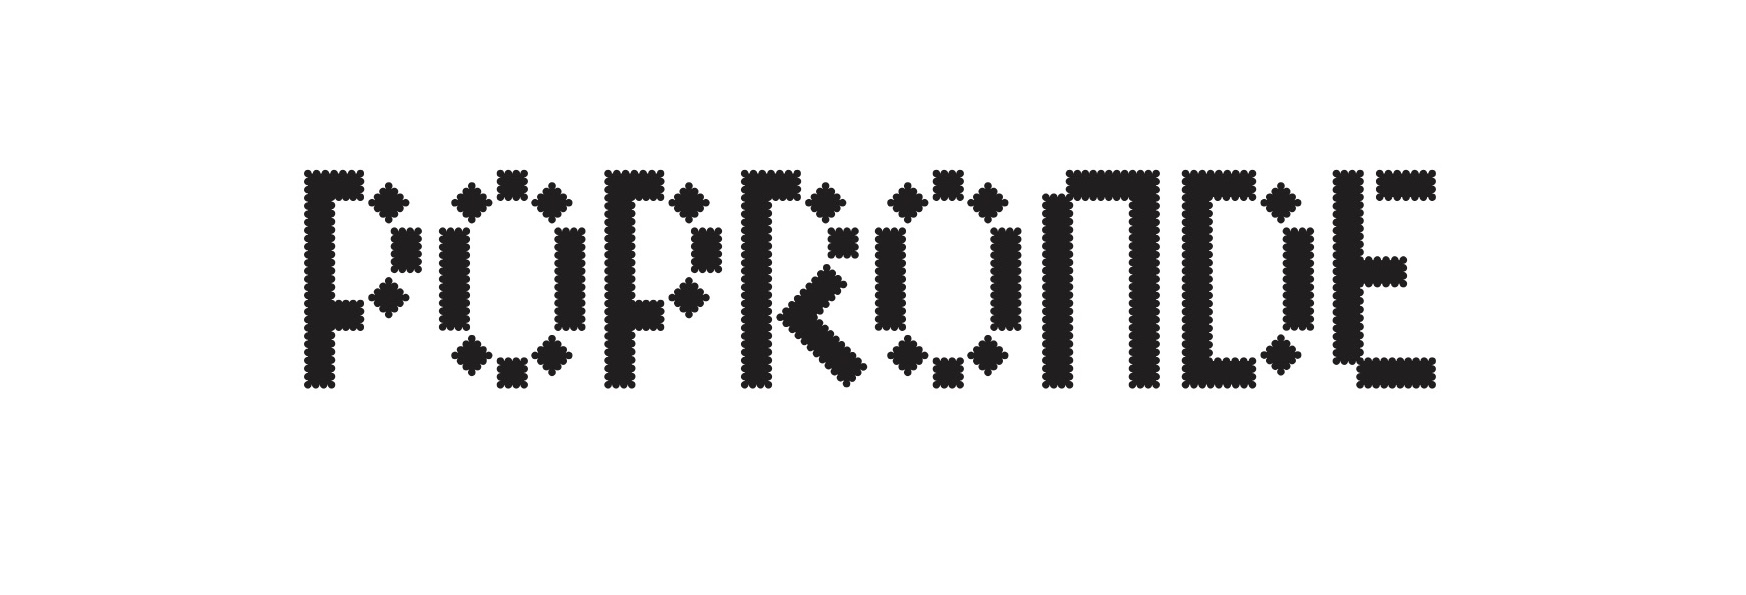 Popronde logo